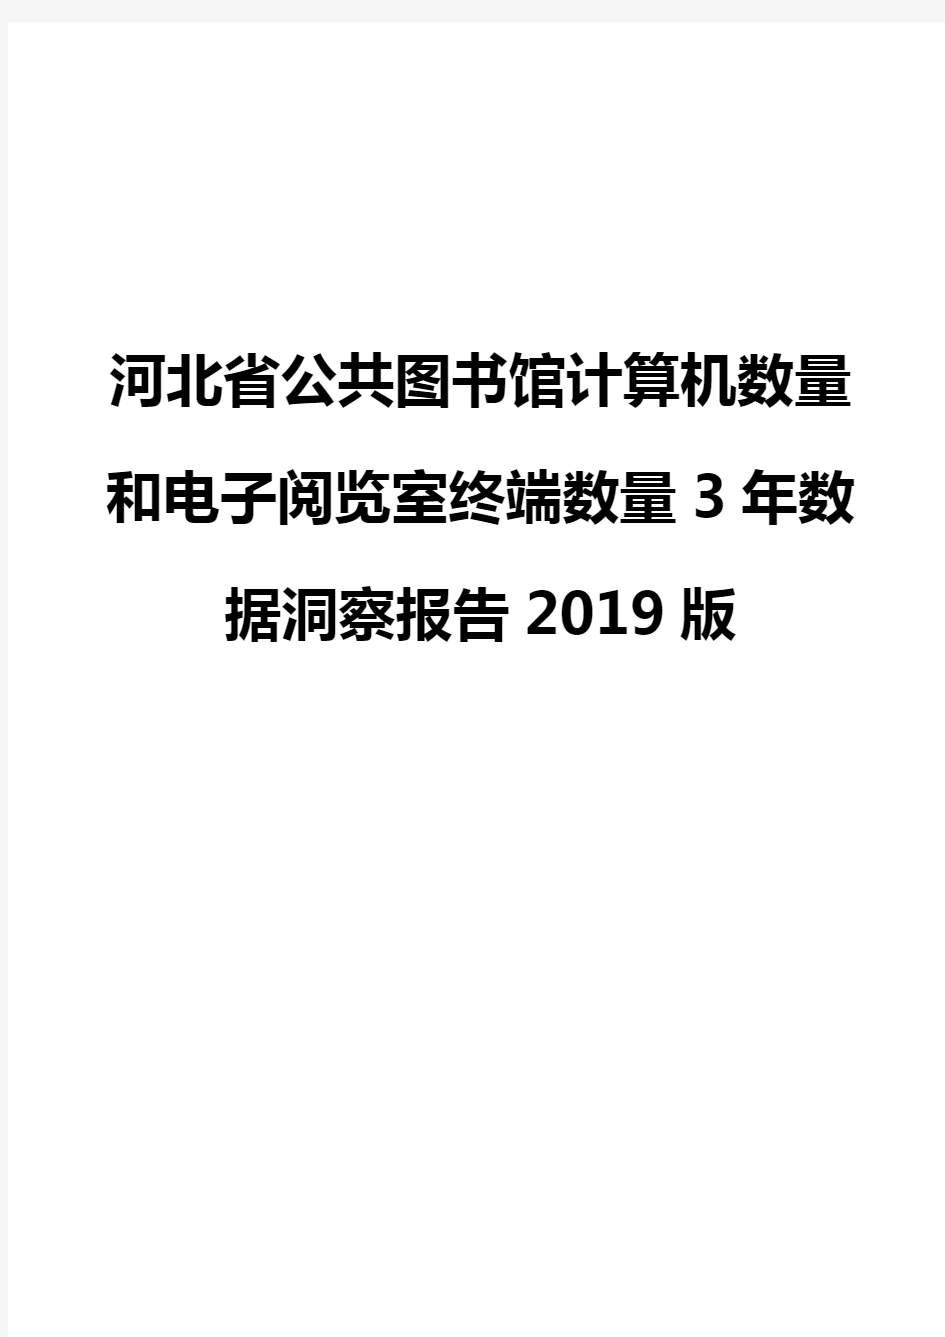 河北省公共图书馆计算机数量和电子阅览室终端数量3年数据洞察报告2019版